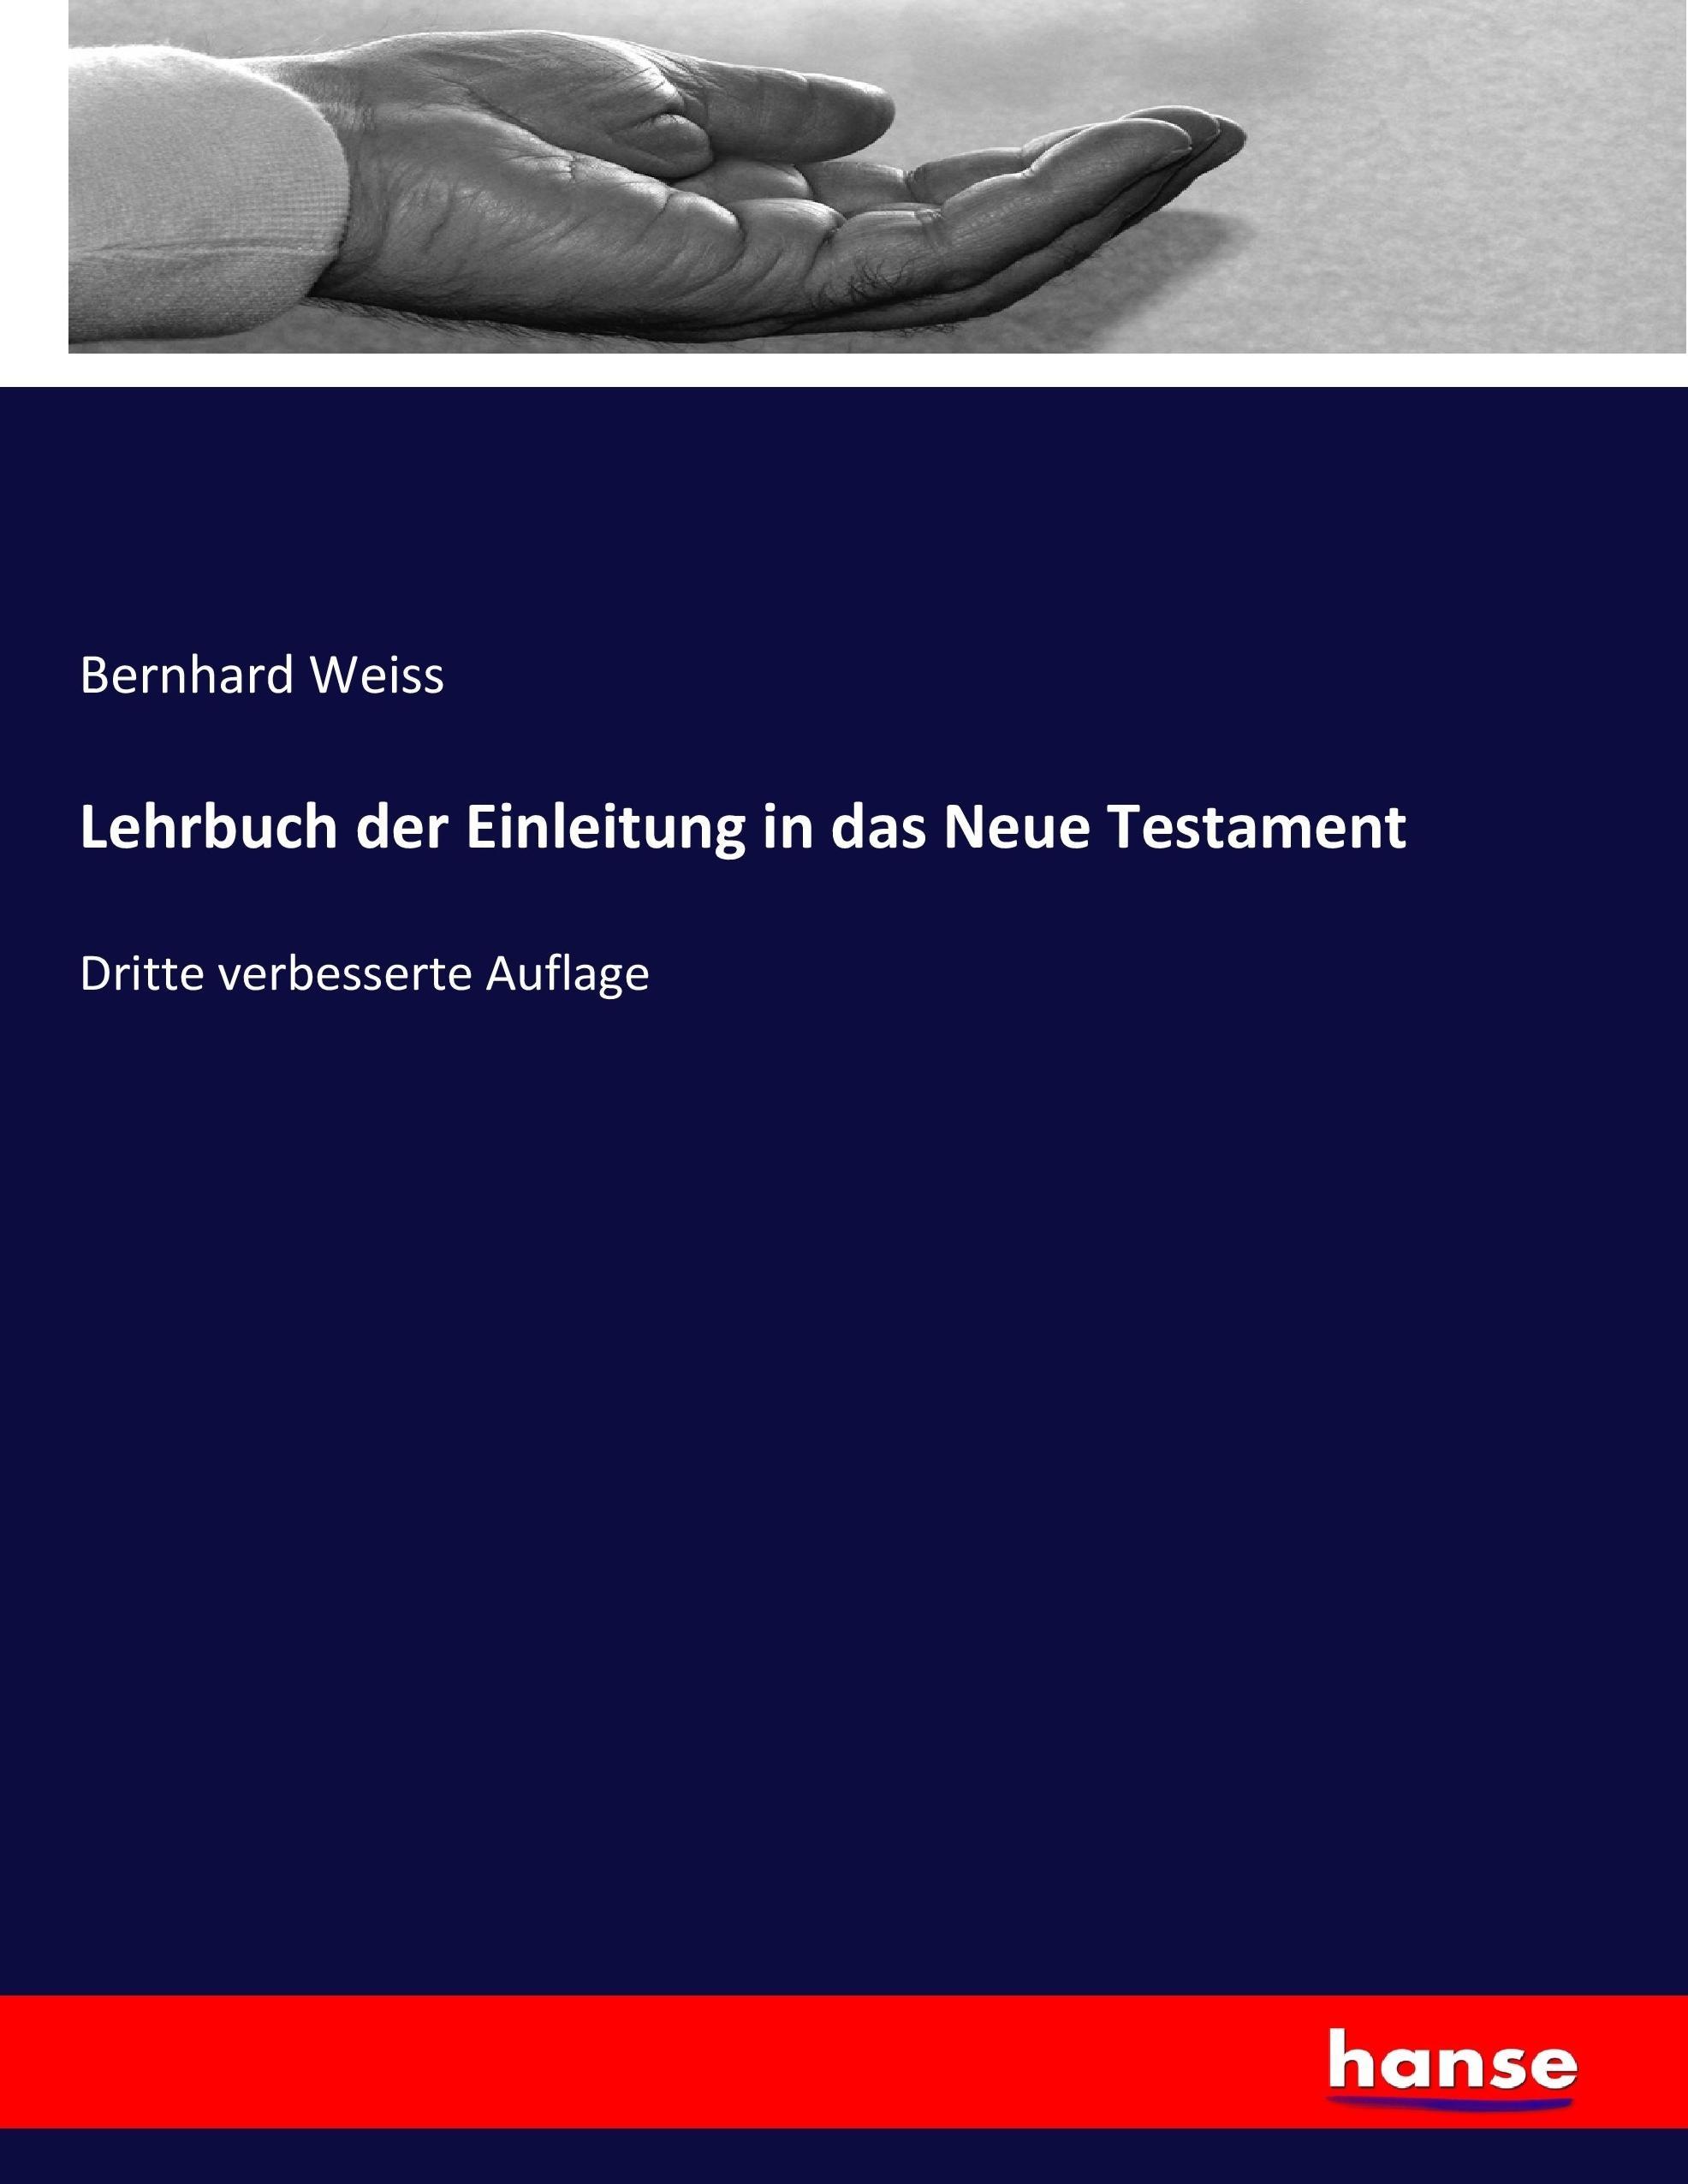 Lehrbuch der Einleitung in das Neue Testament | Dritte verbesserte Auflage | Bernhard Weiss | Taschenbuch | Paperback | 636 S. | Deutsch | 2017 | hansebooks | EAN 9783743607293 - Weiss, Bernhard